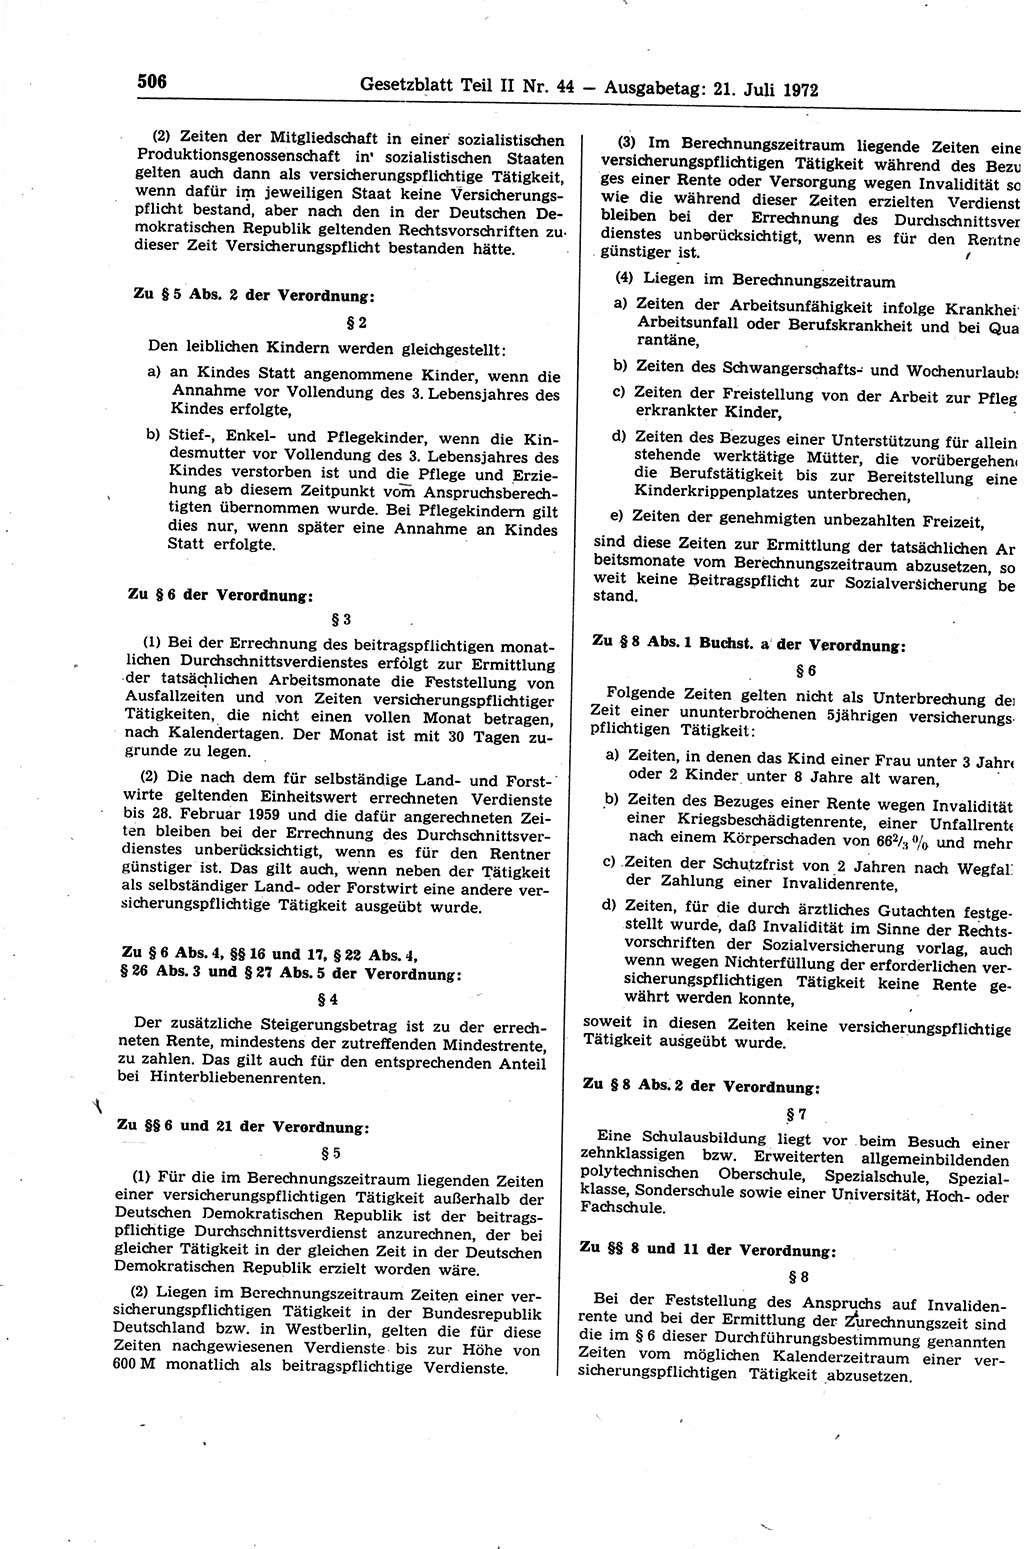 Gesetzblatt (GBl.) der Deutschen Demokratischen Republik (DDR) Teil ⅠⅠ 1972, Seite 506 (GBl. DDR ⅠⅠ 1972, S. 506)